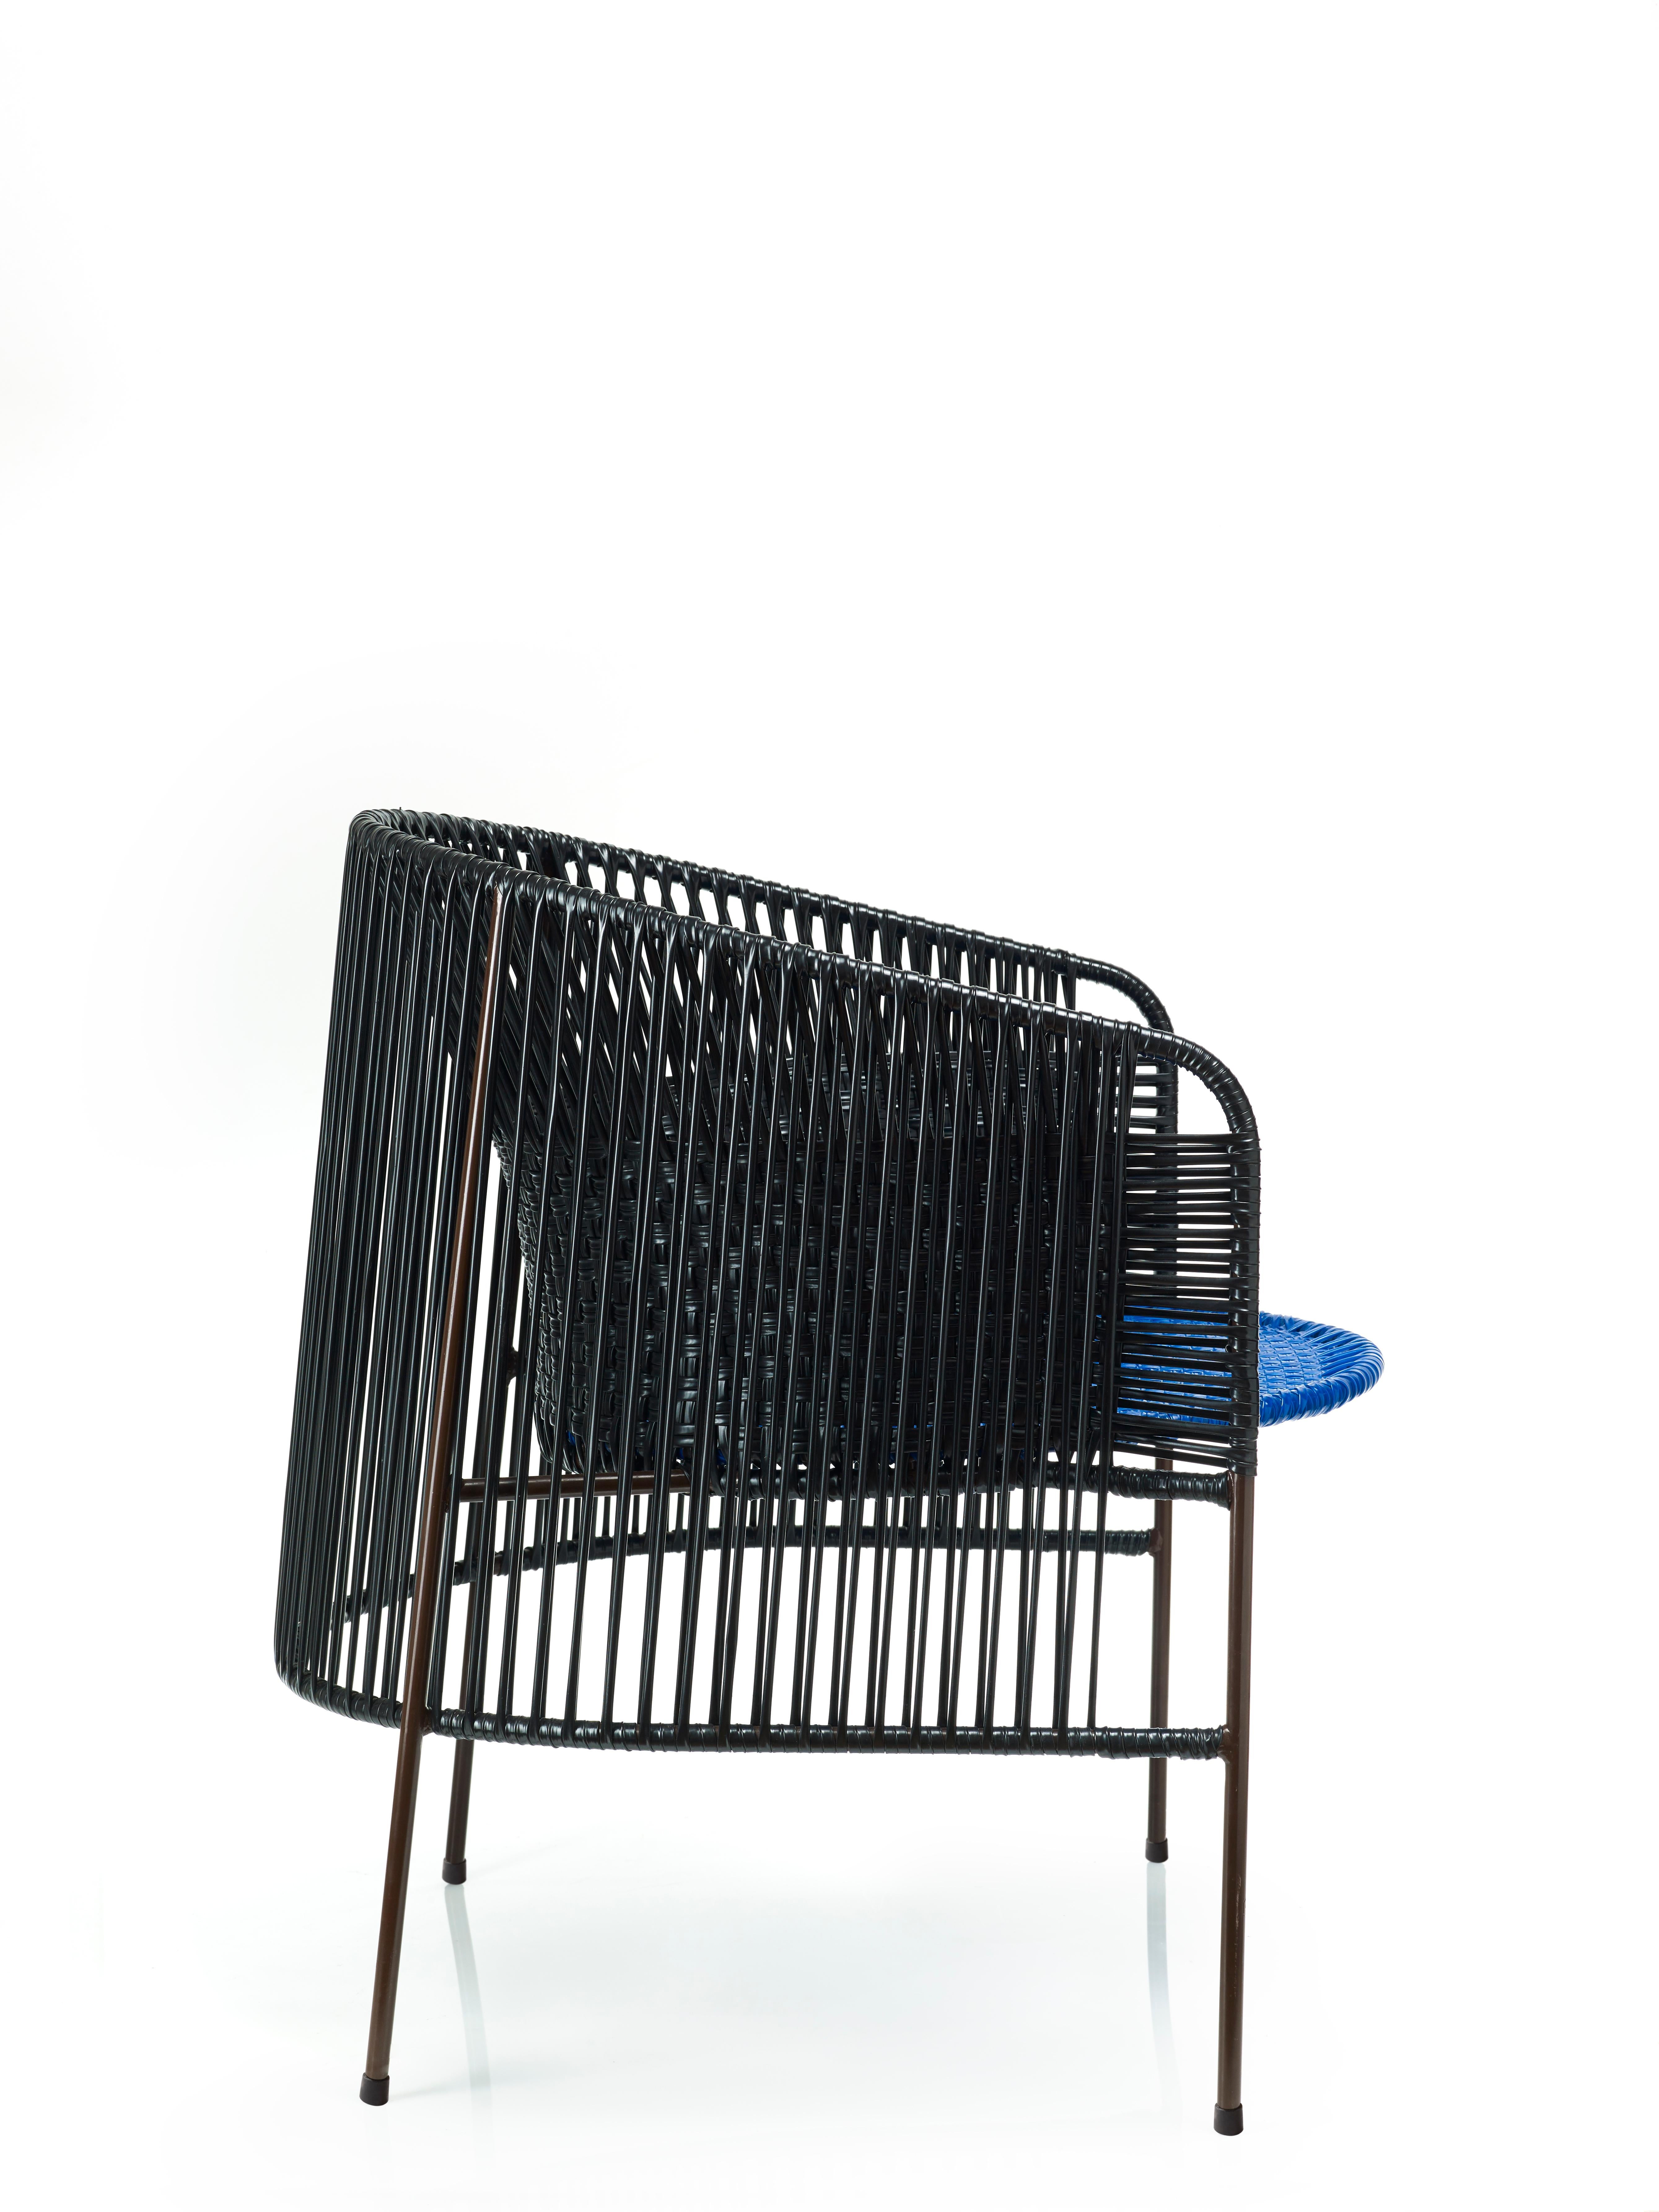 German Black Caribe Lounge Chair by Sebastian Herkner